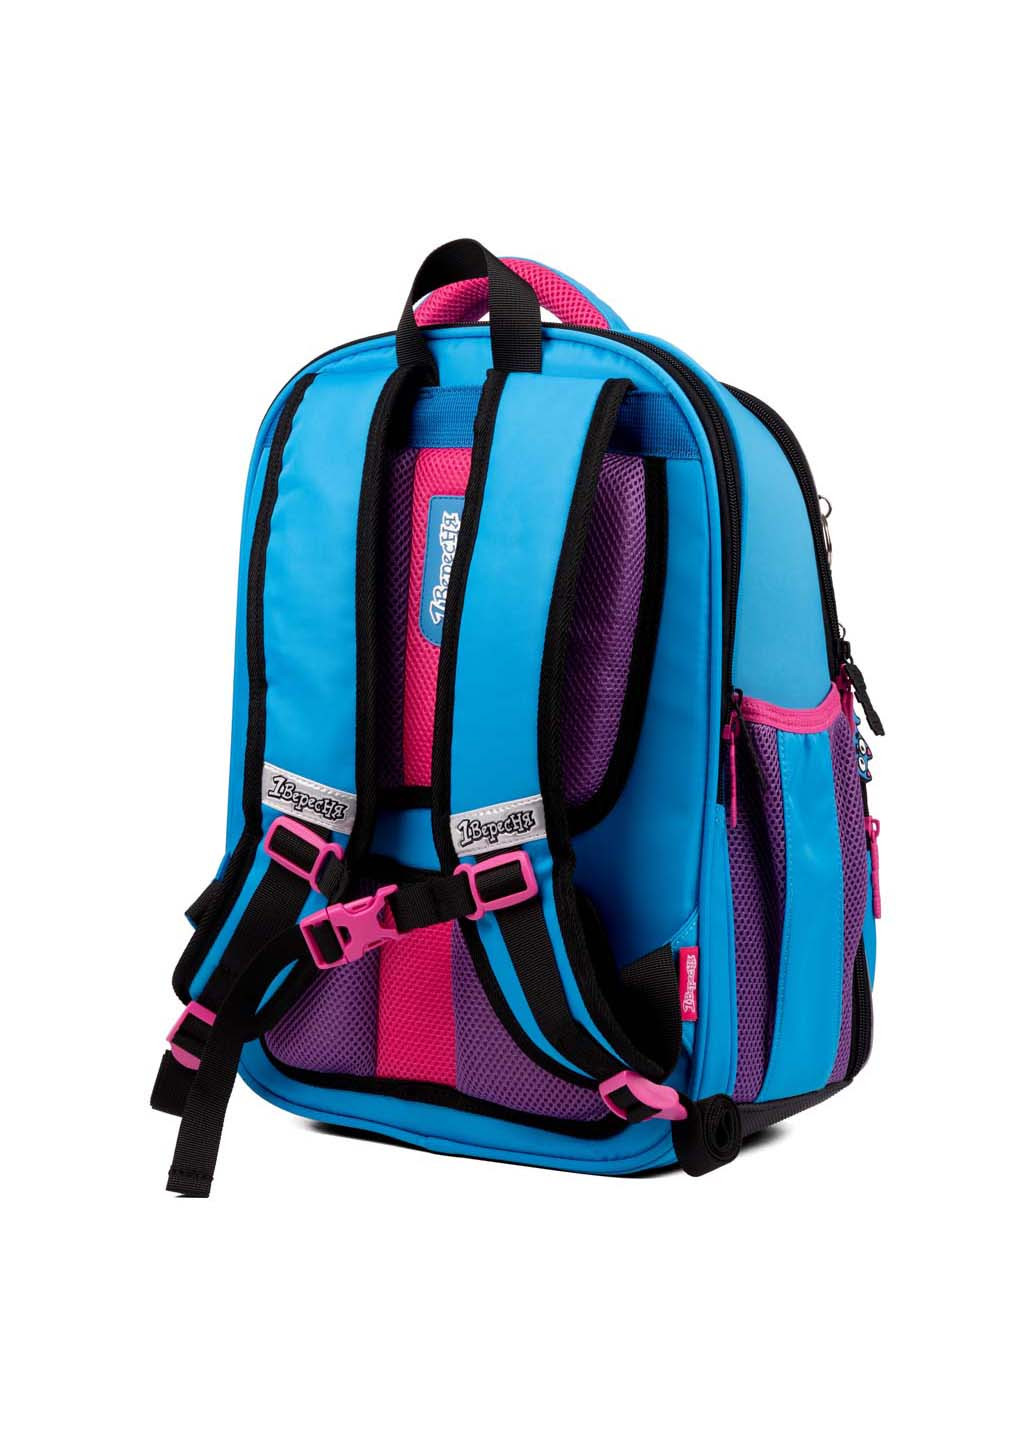 Рюкзак школьный S-97 Pink and Blue 1 Вересня (260163224)